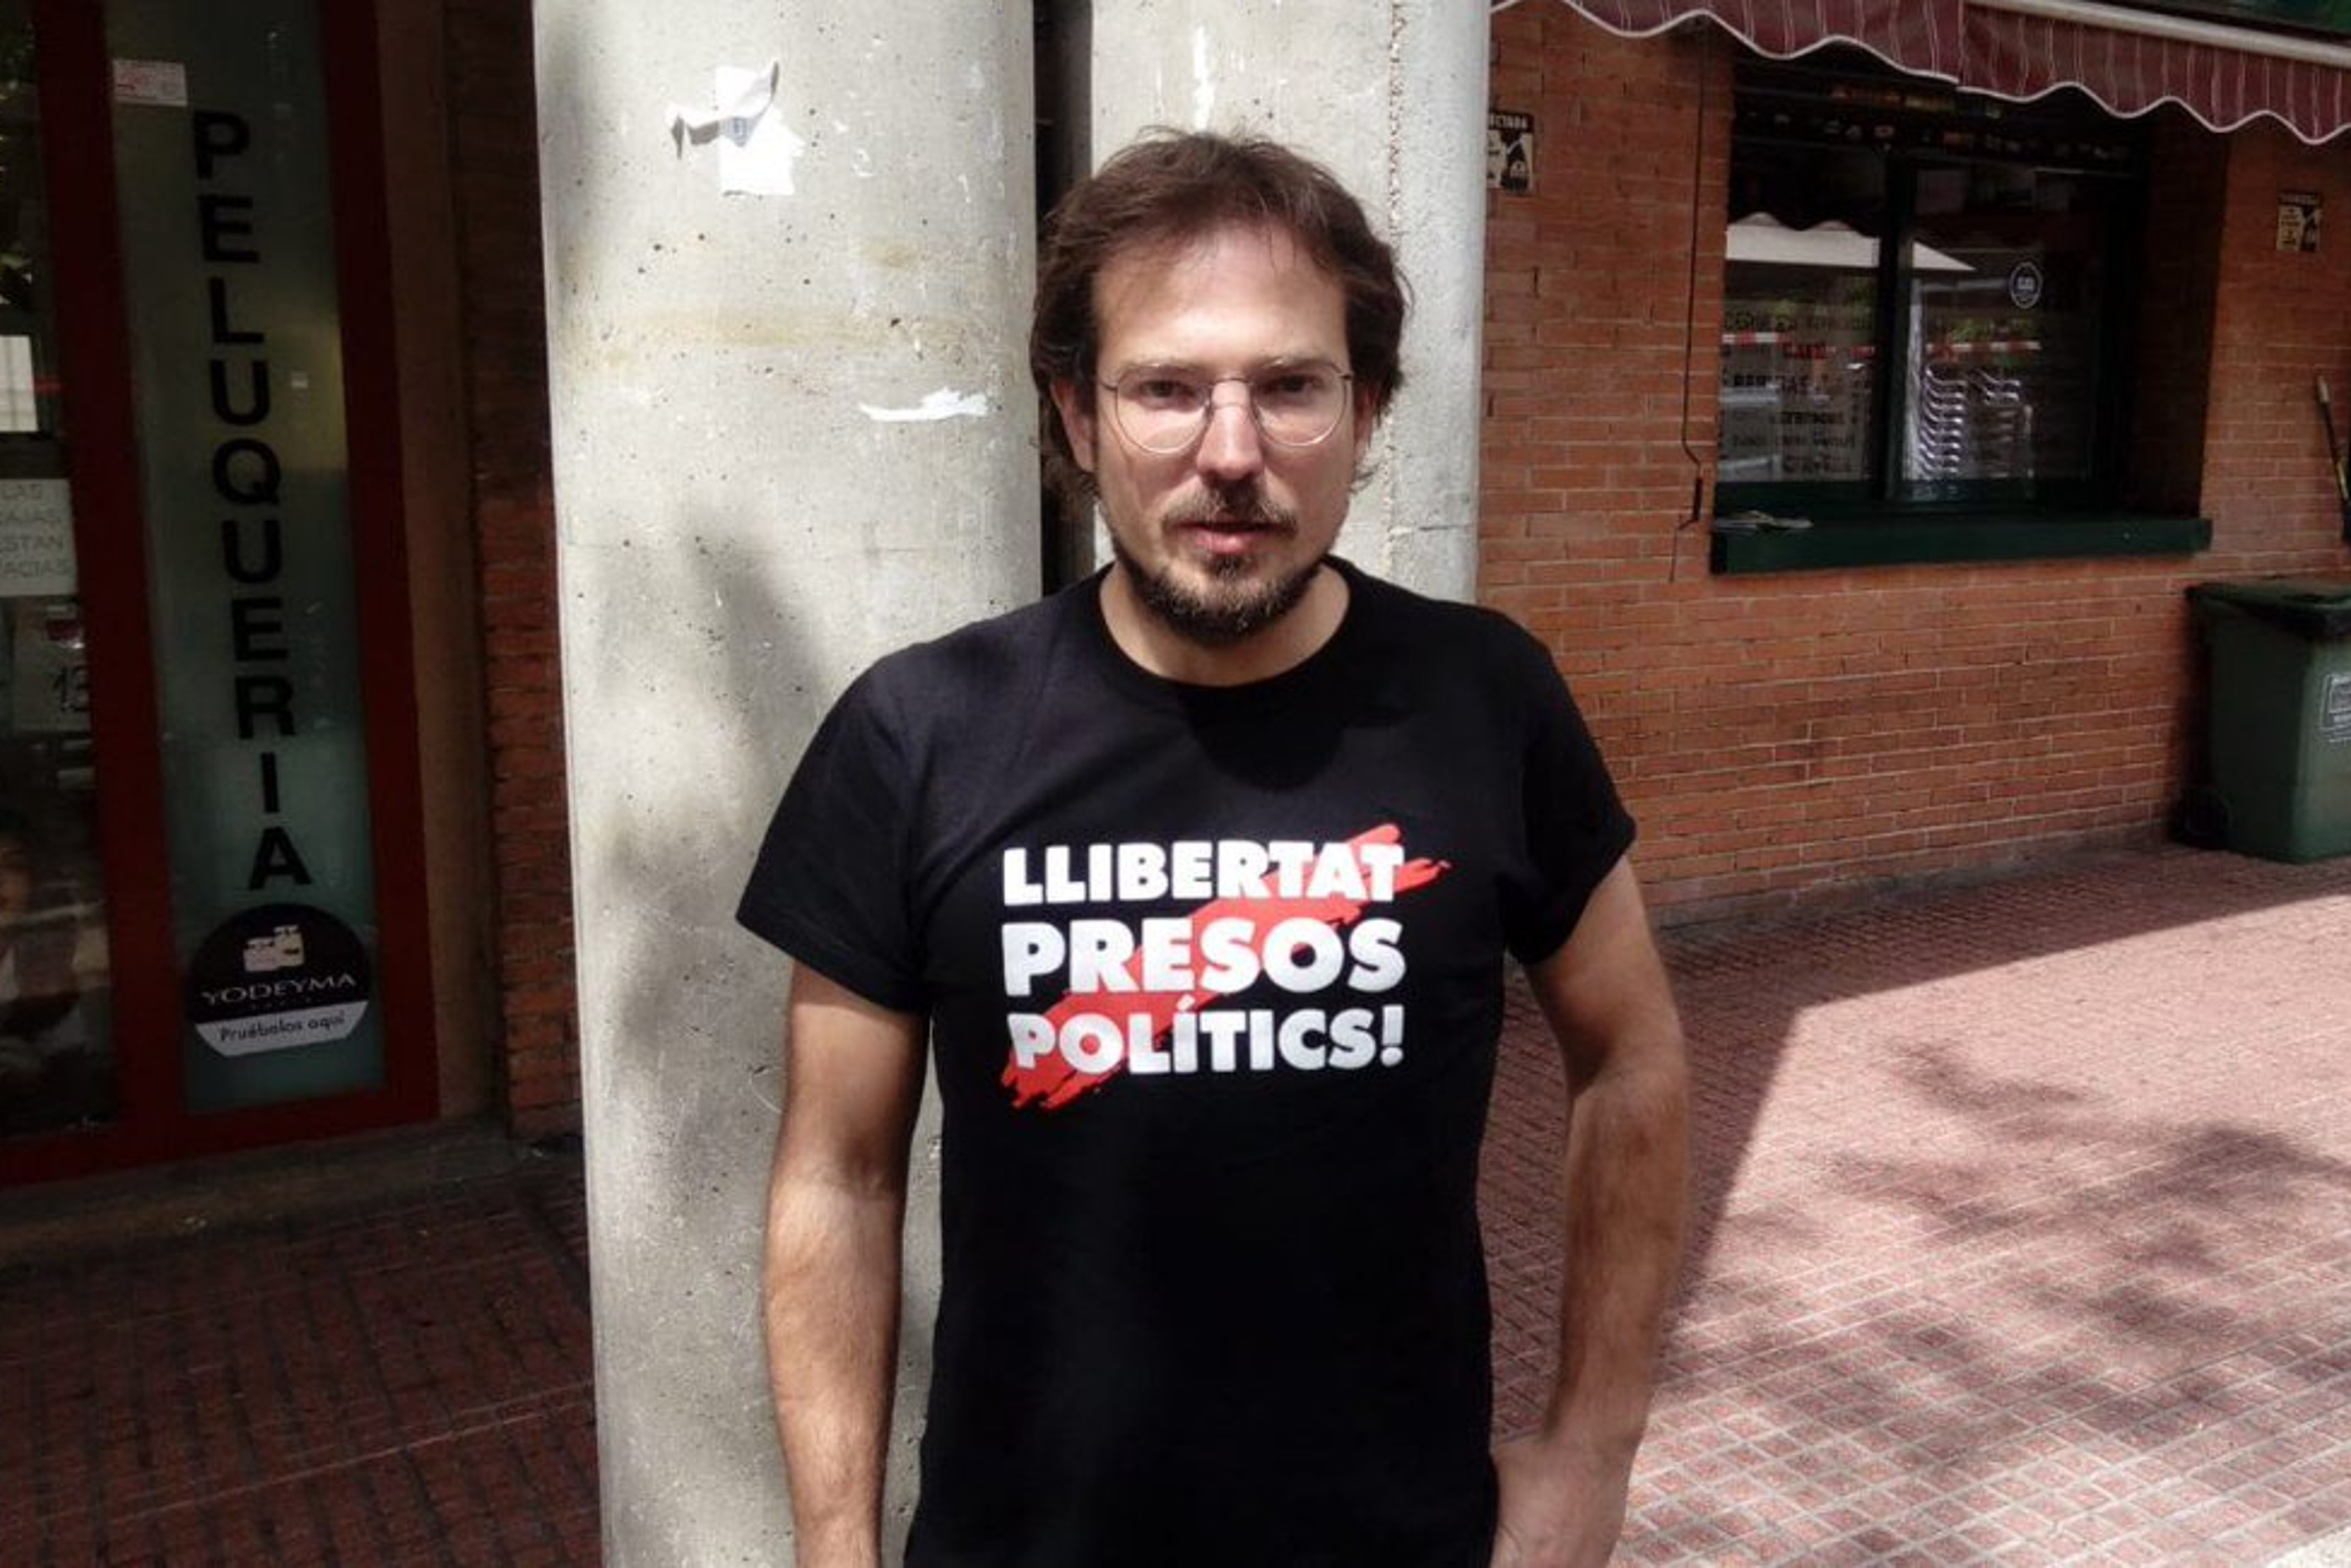 La policia expulsa de la sala un exregidor de la CUP de Sabadell per dur 'Llibertat presos polítics' a la samarreta